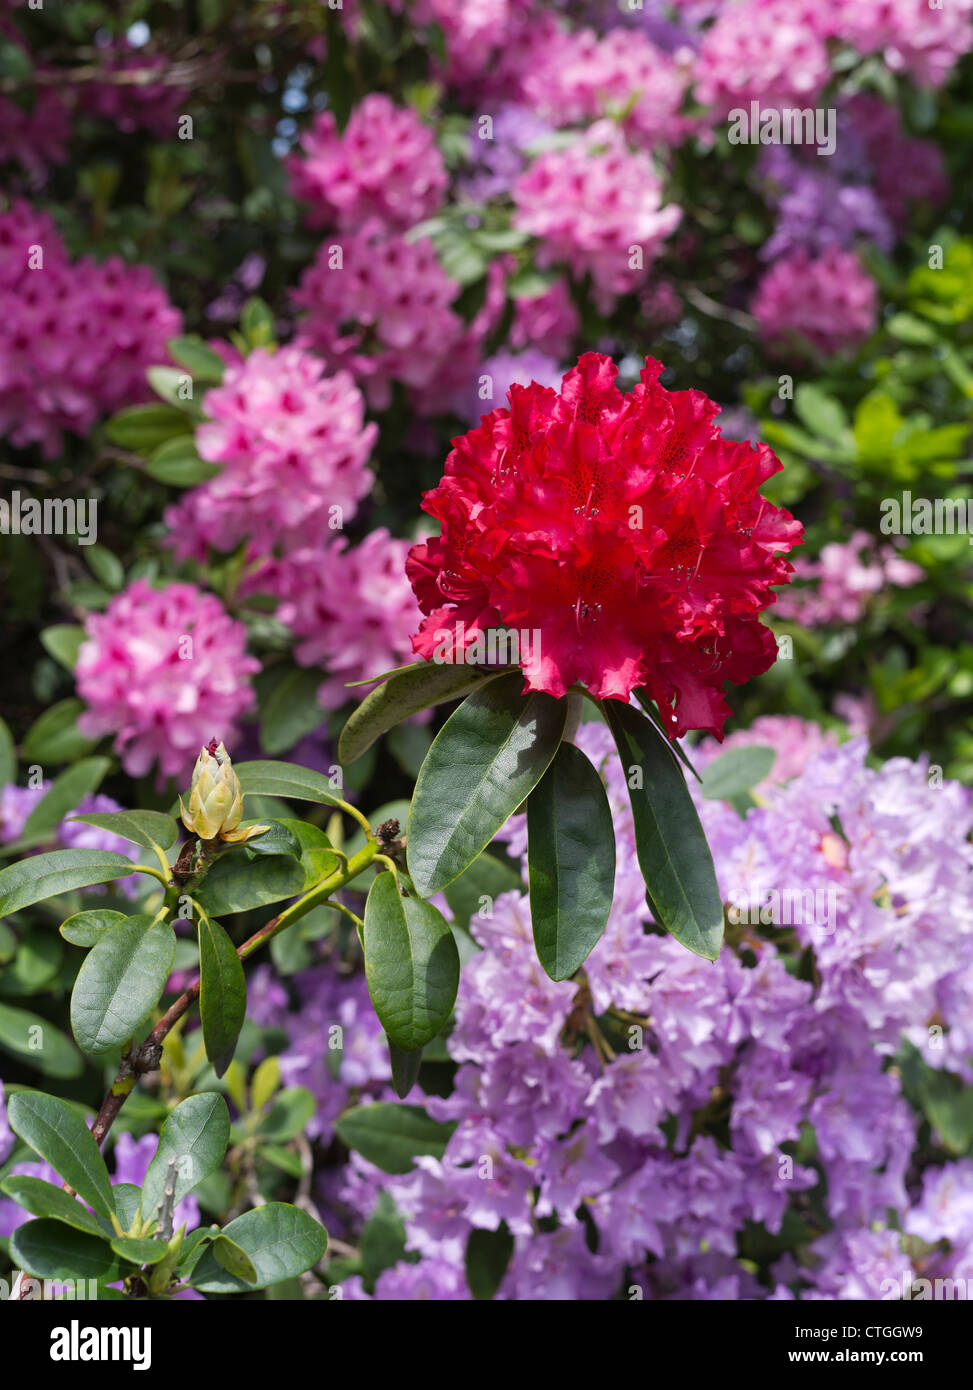 dh Rhododendron ponticum BEAULIEU HAMPSHIRE Color rojo flor púrpura arbustos floración arbusto jardín flores reino unido jardines floreciendo nuevos rododendros forestales Foto de stock